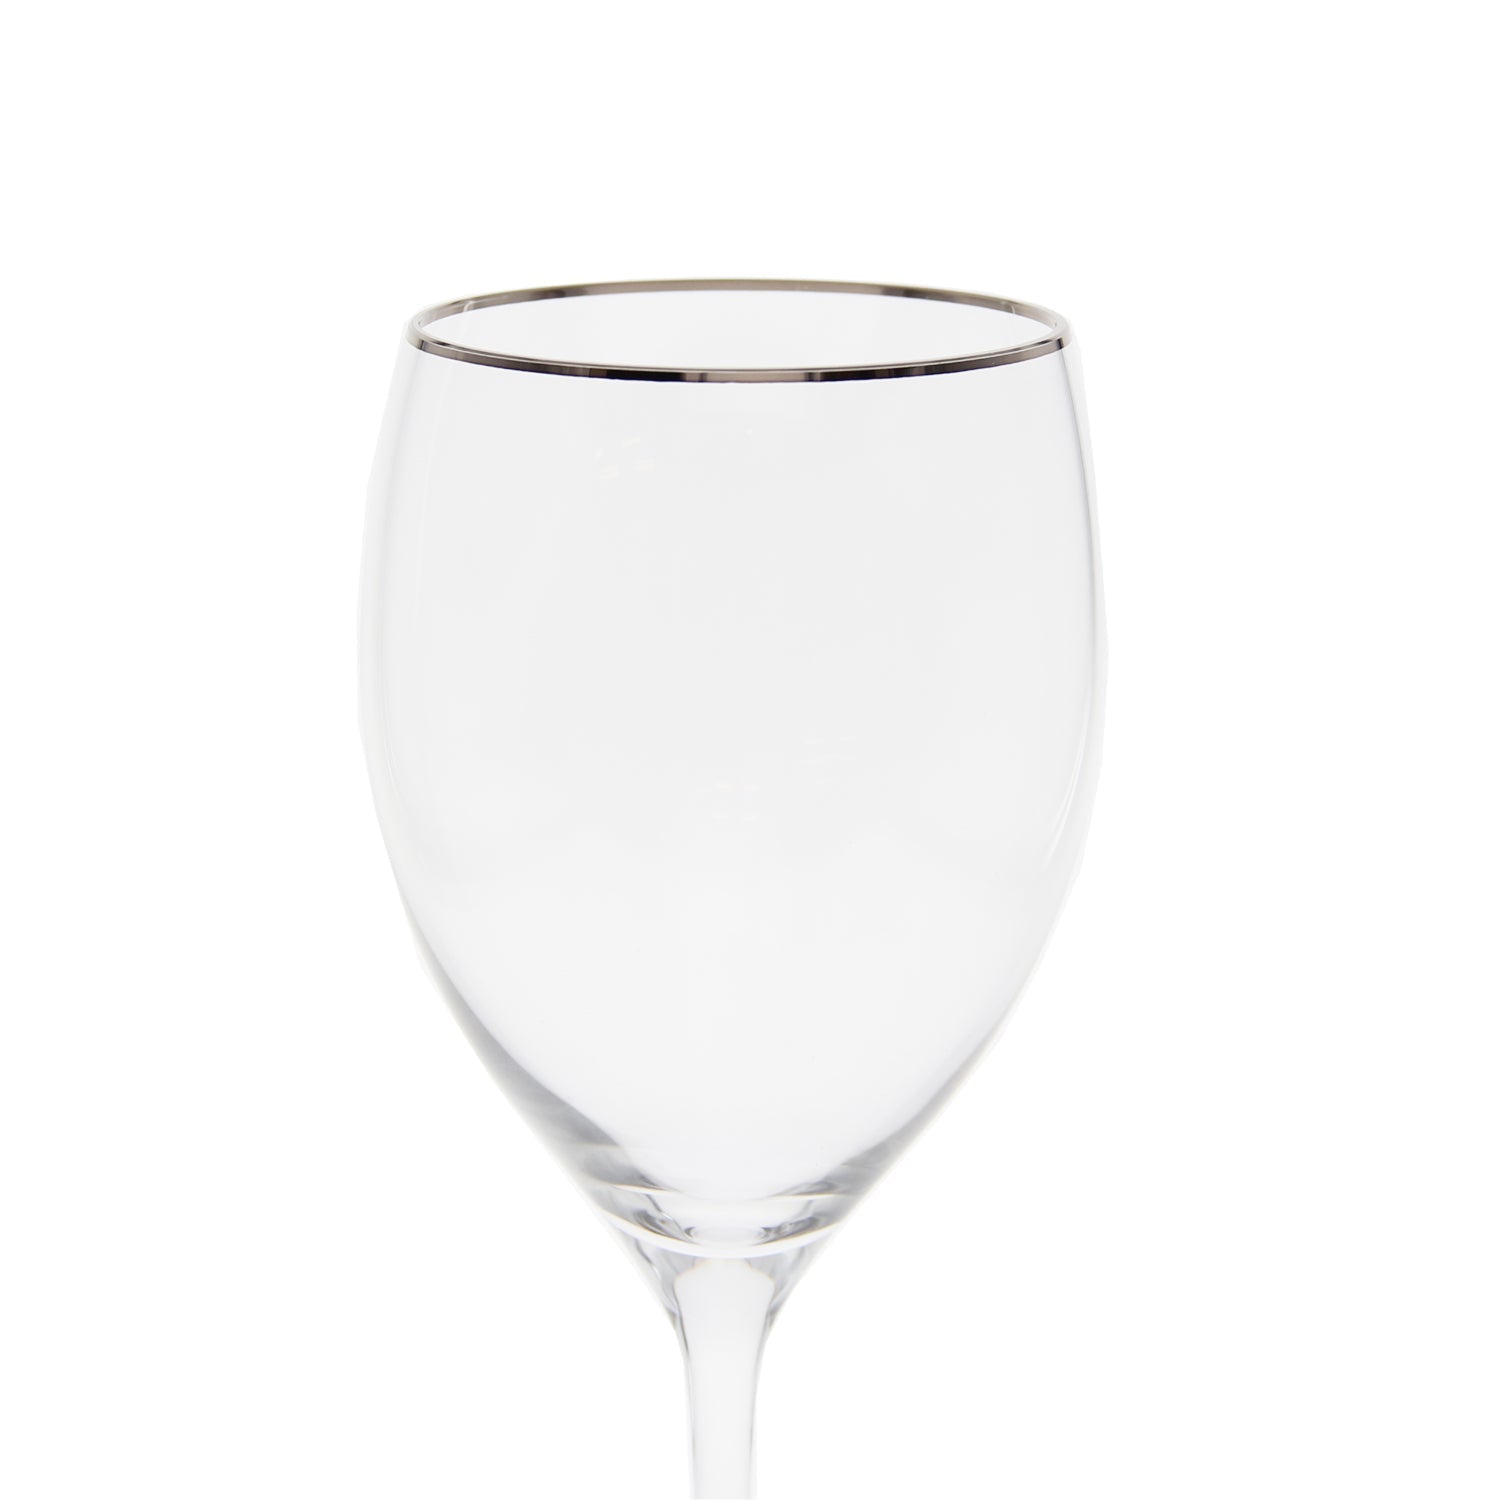 SILVER WHITE WINE GLASS